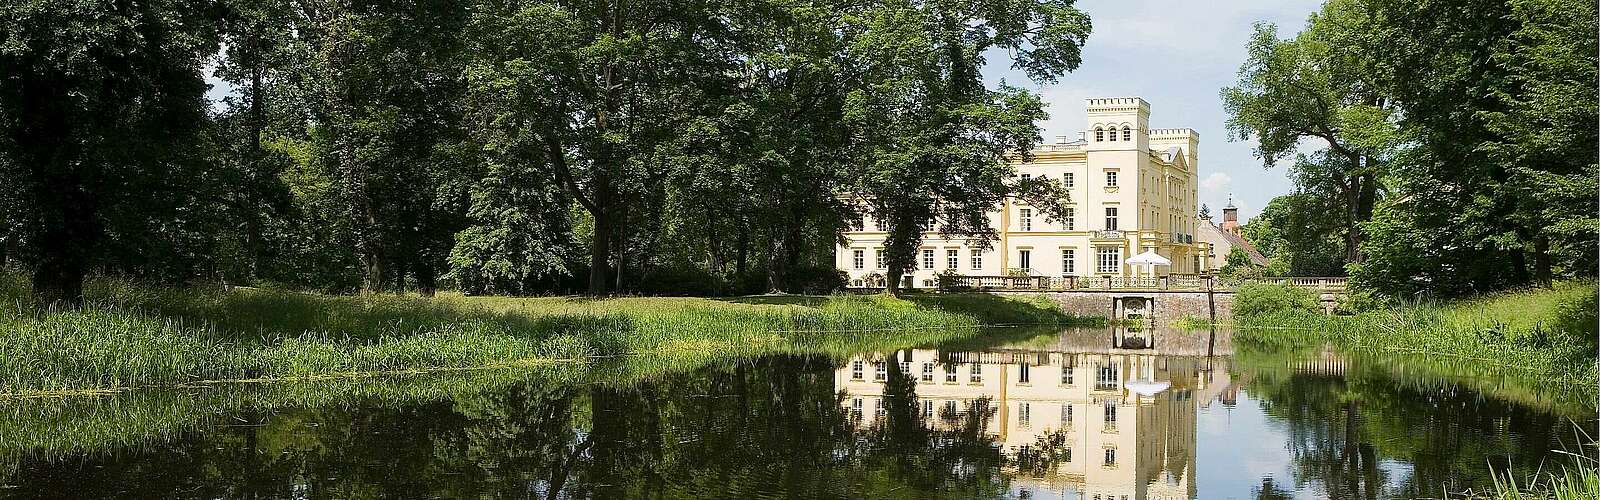 Schloss Steinhöfel mit Parkanlage,
        
    

        Foto: Fotograf / Lizenz - Media Import/Paul Hahn